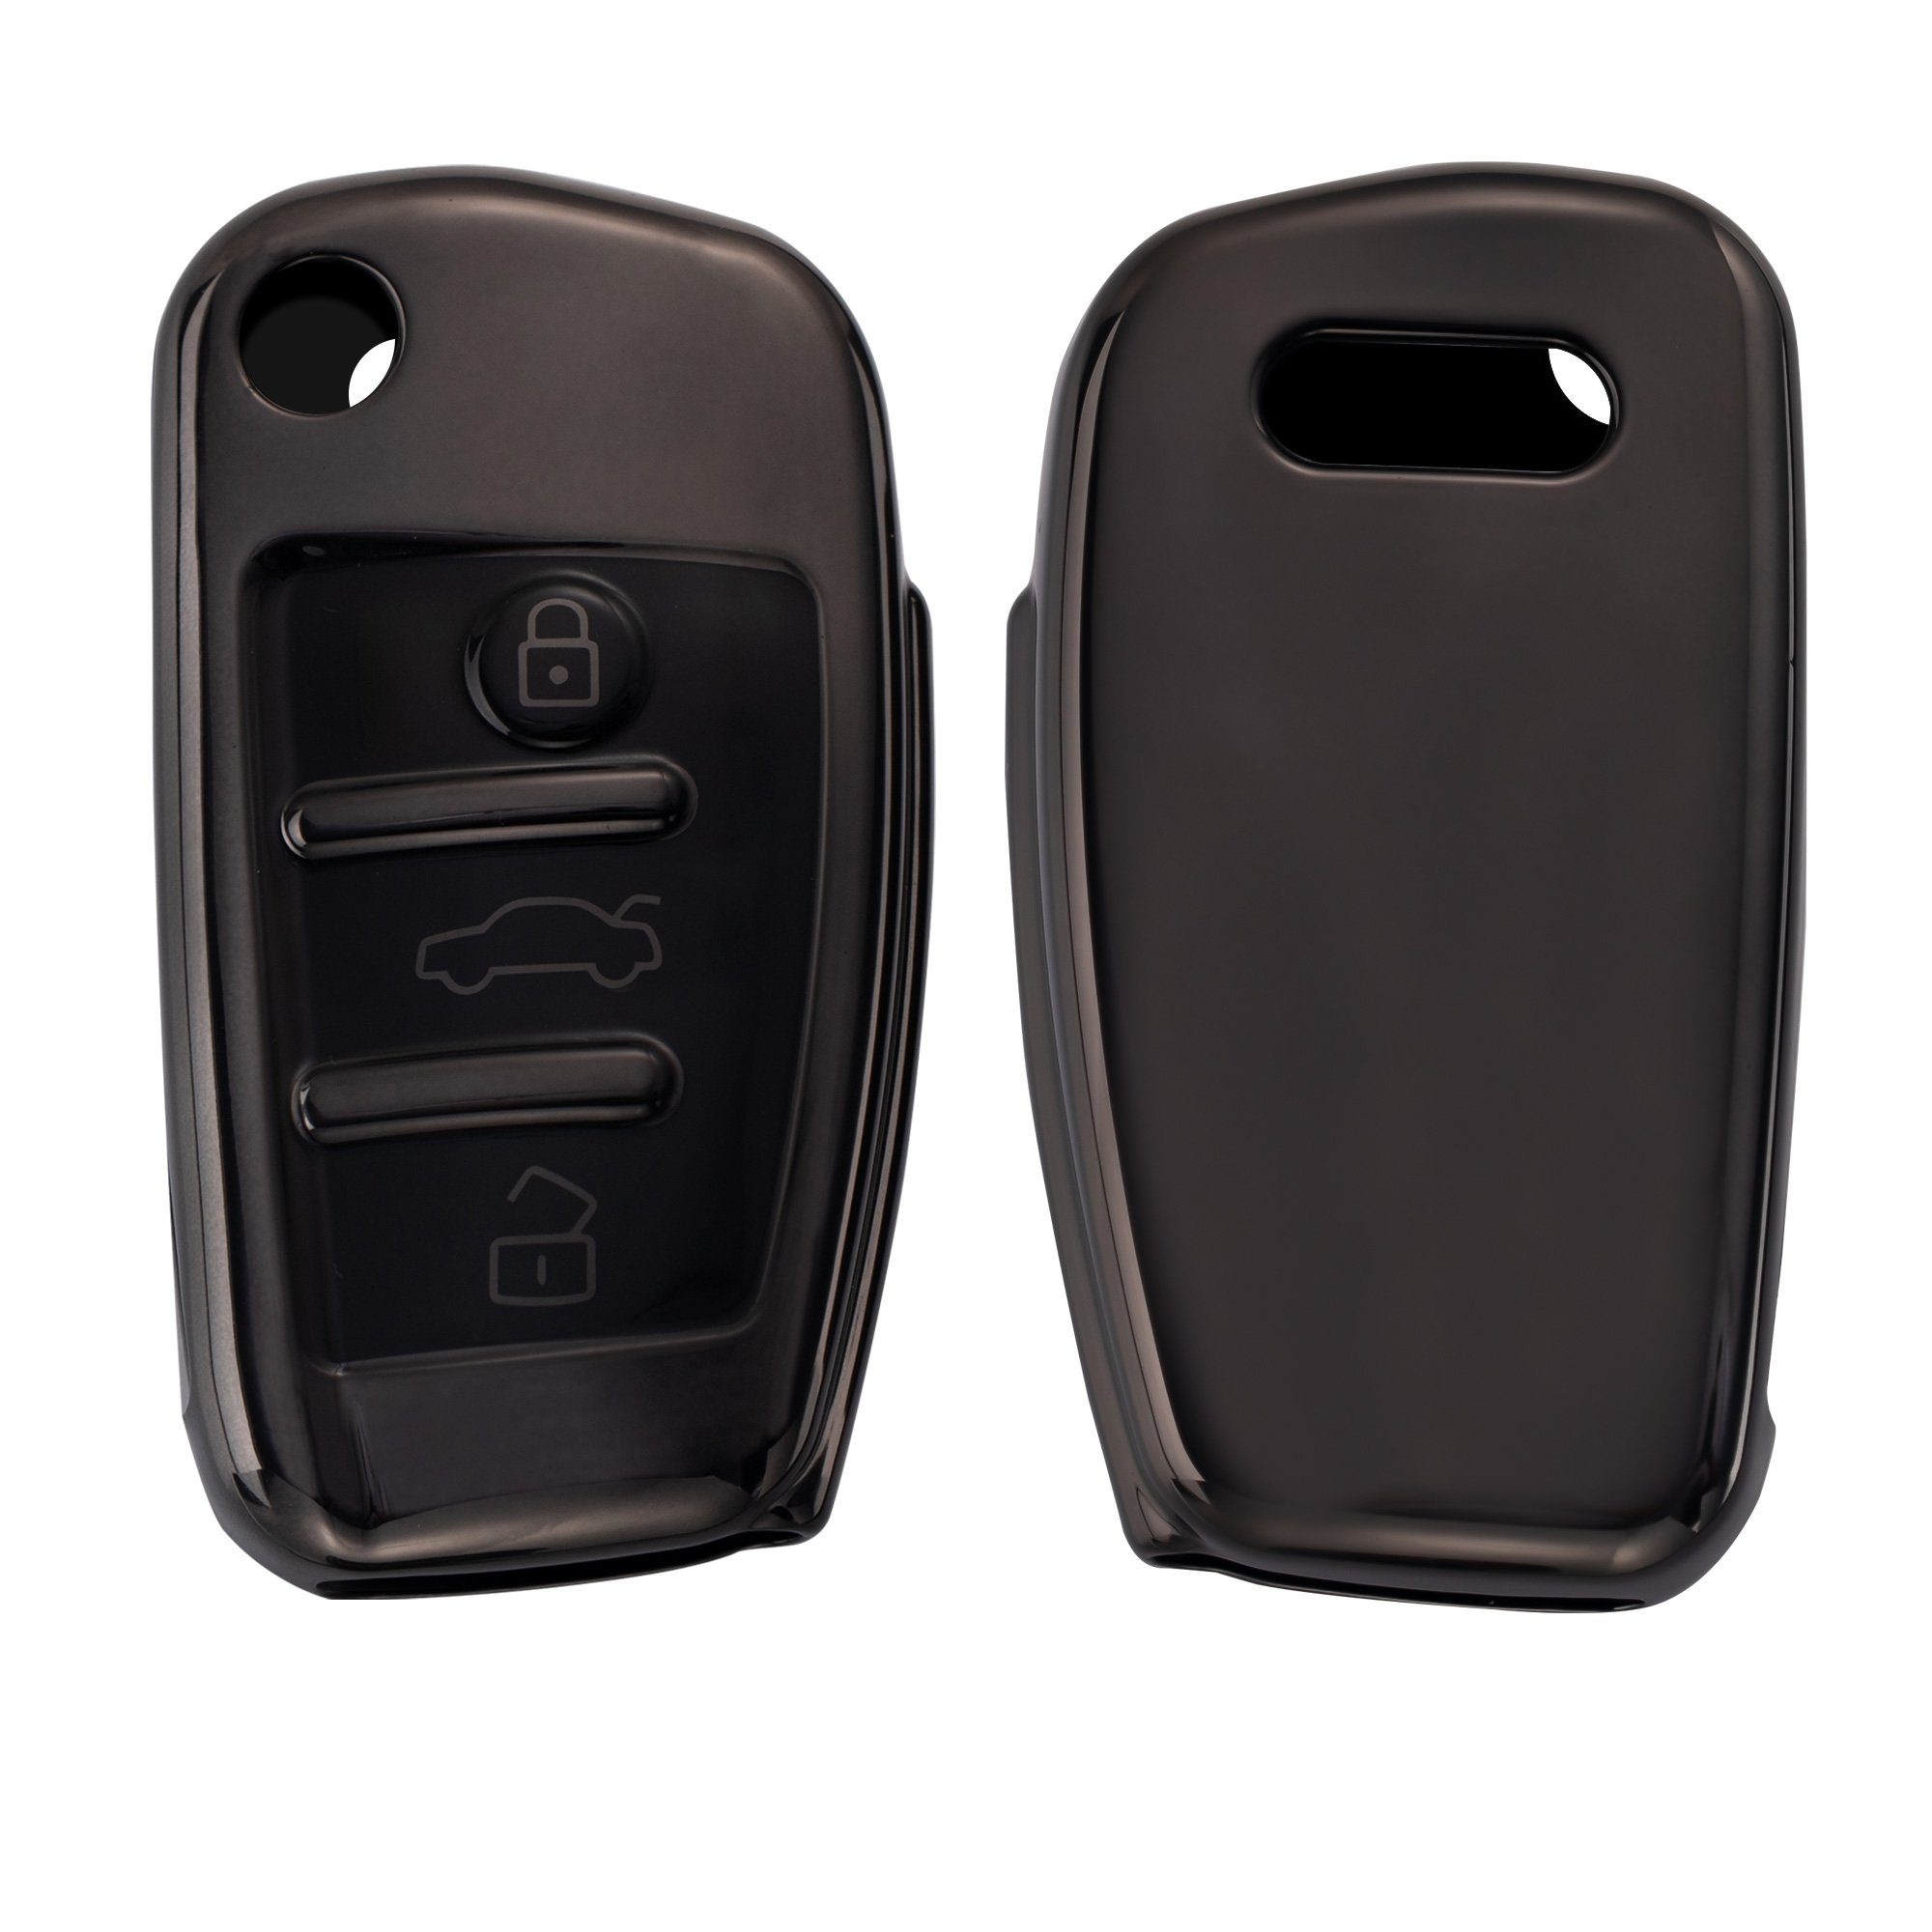 Schlüsseltasche Hülle Anthrazit für Autoschlüssel Case kwmobile Audi, Cover Schlüsselhülle Schlüssel Hochglanz Silikon